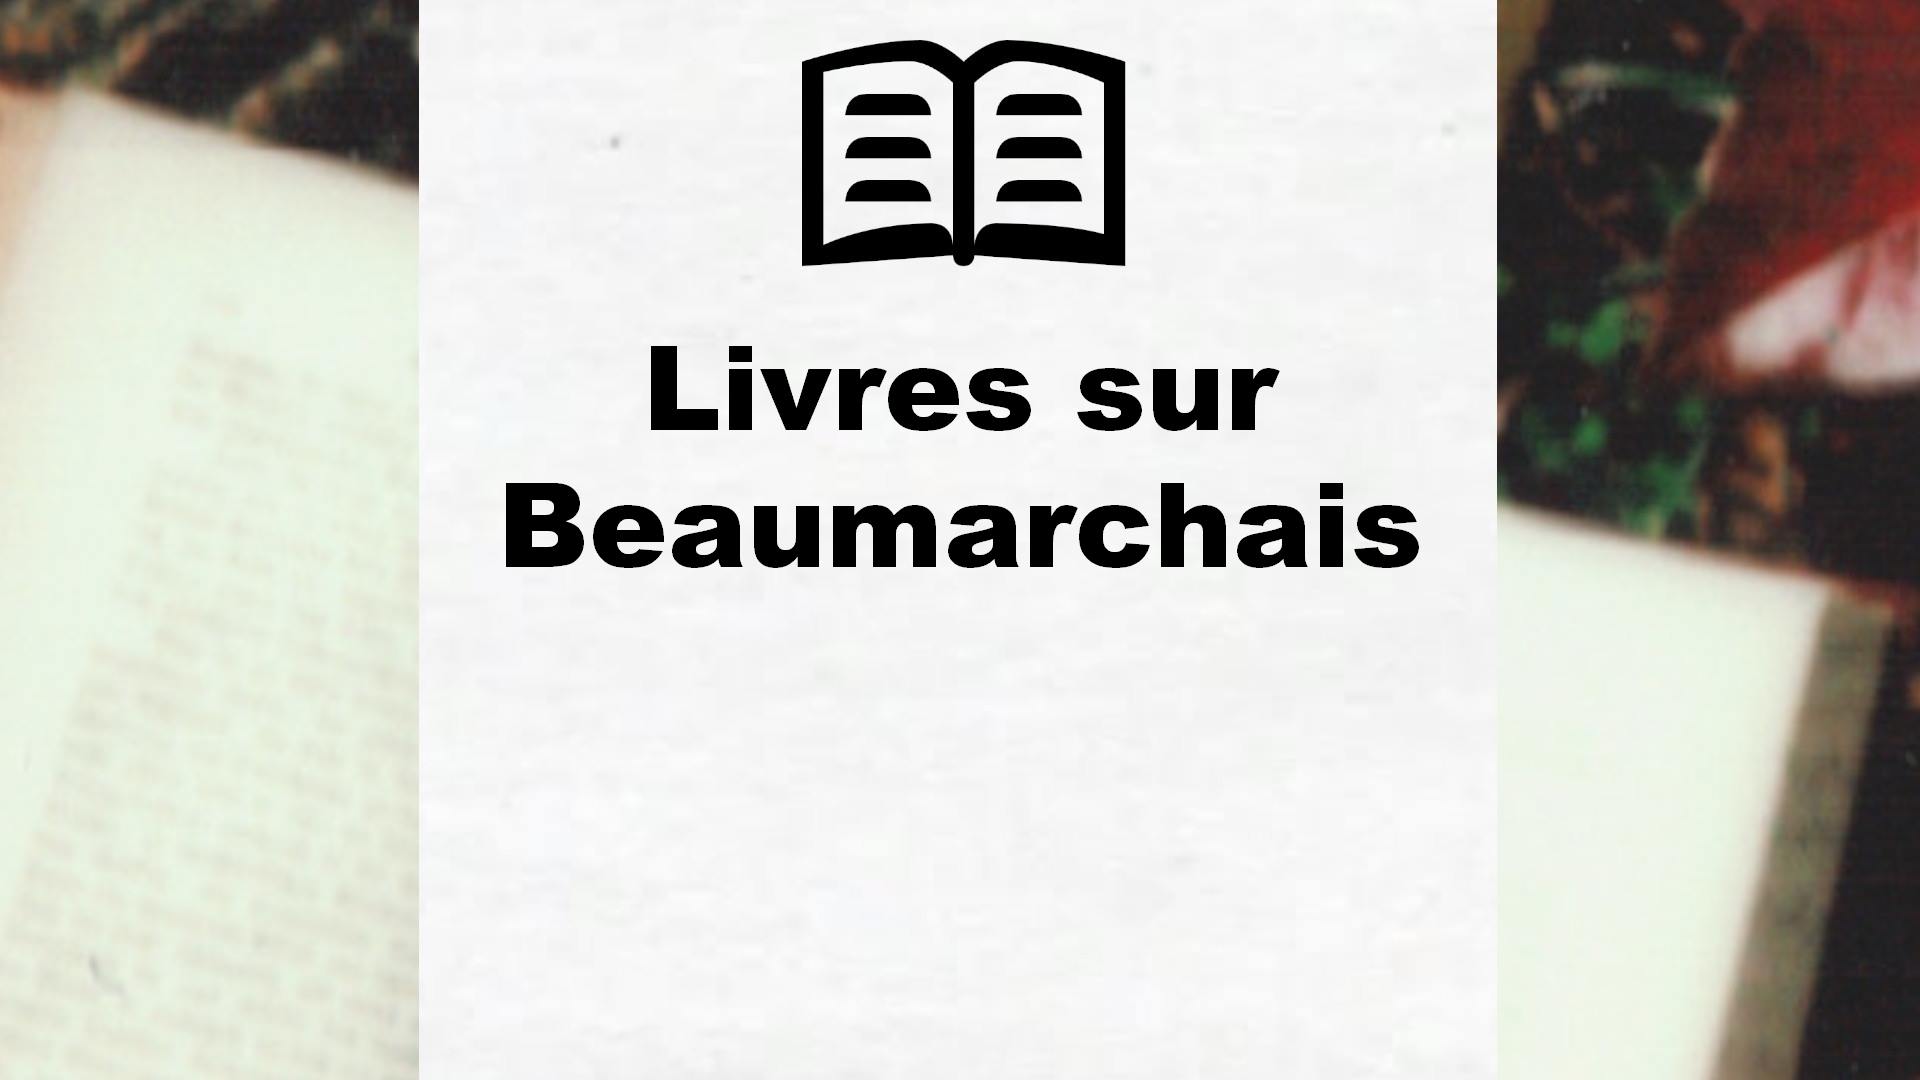 Livres sur Beaumarchais